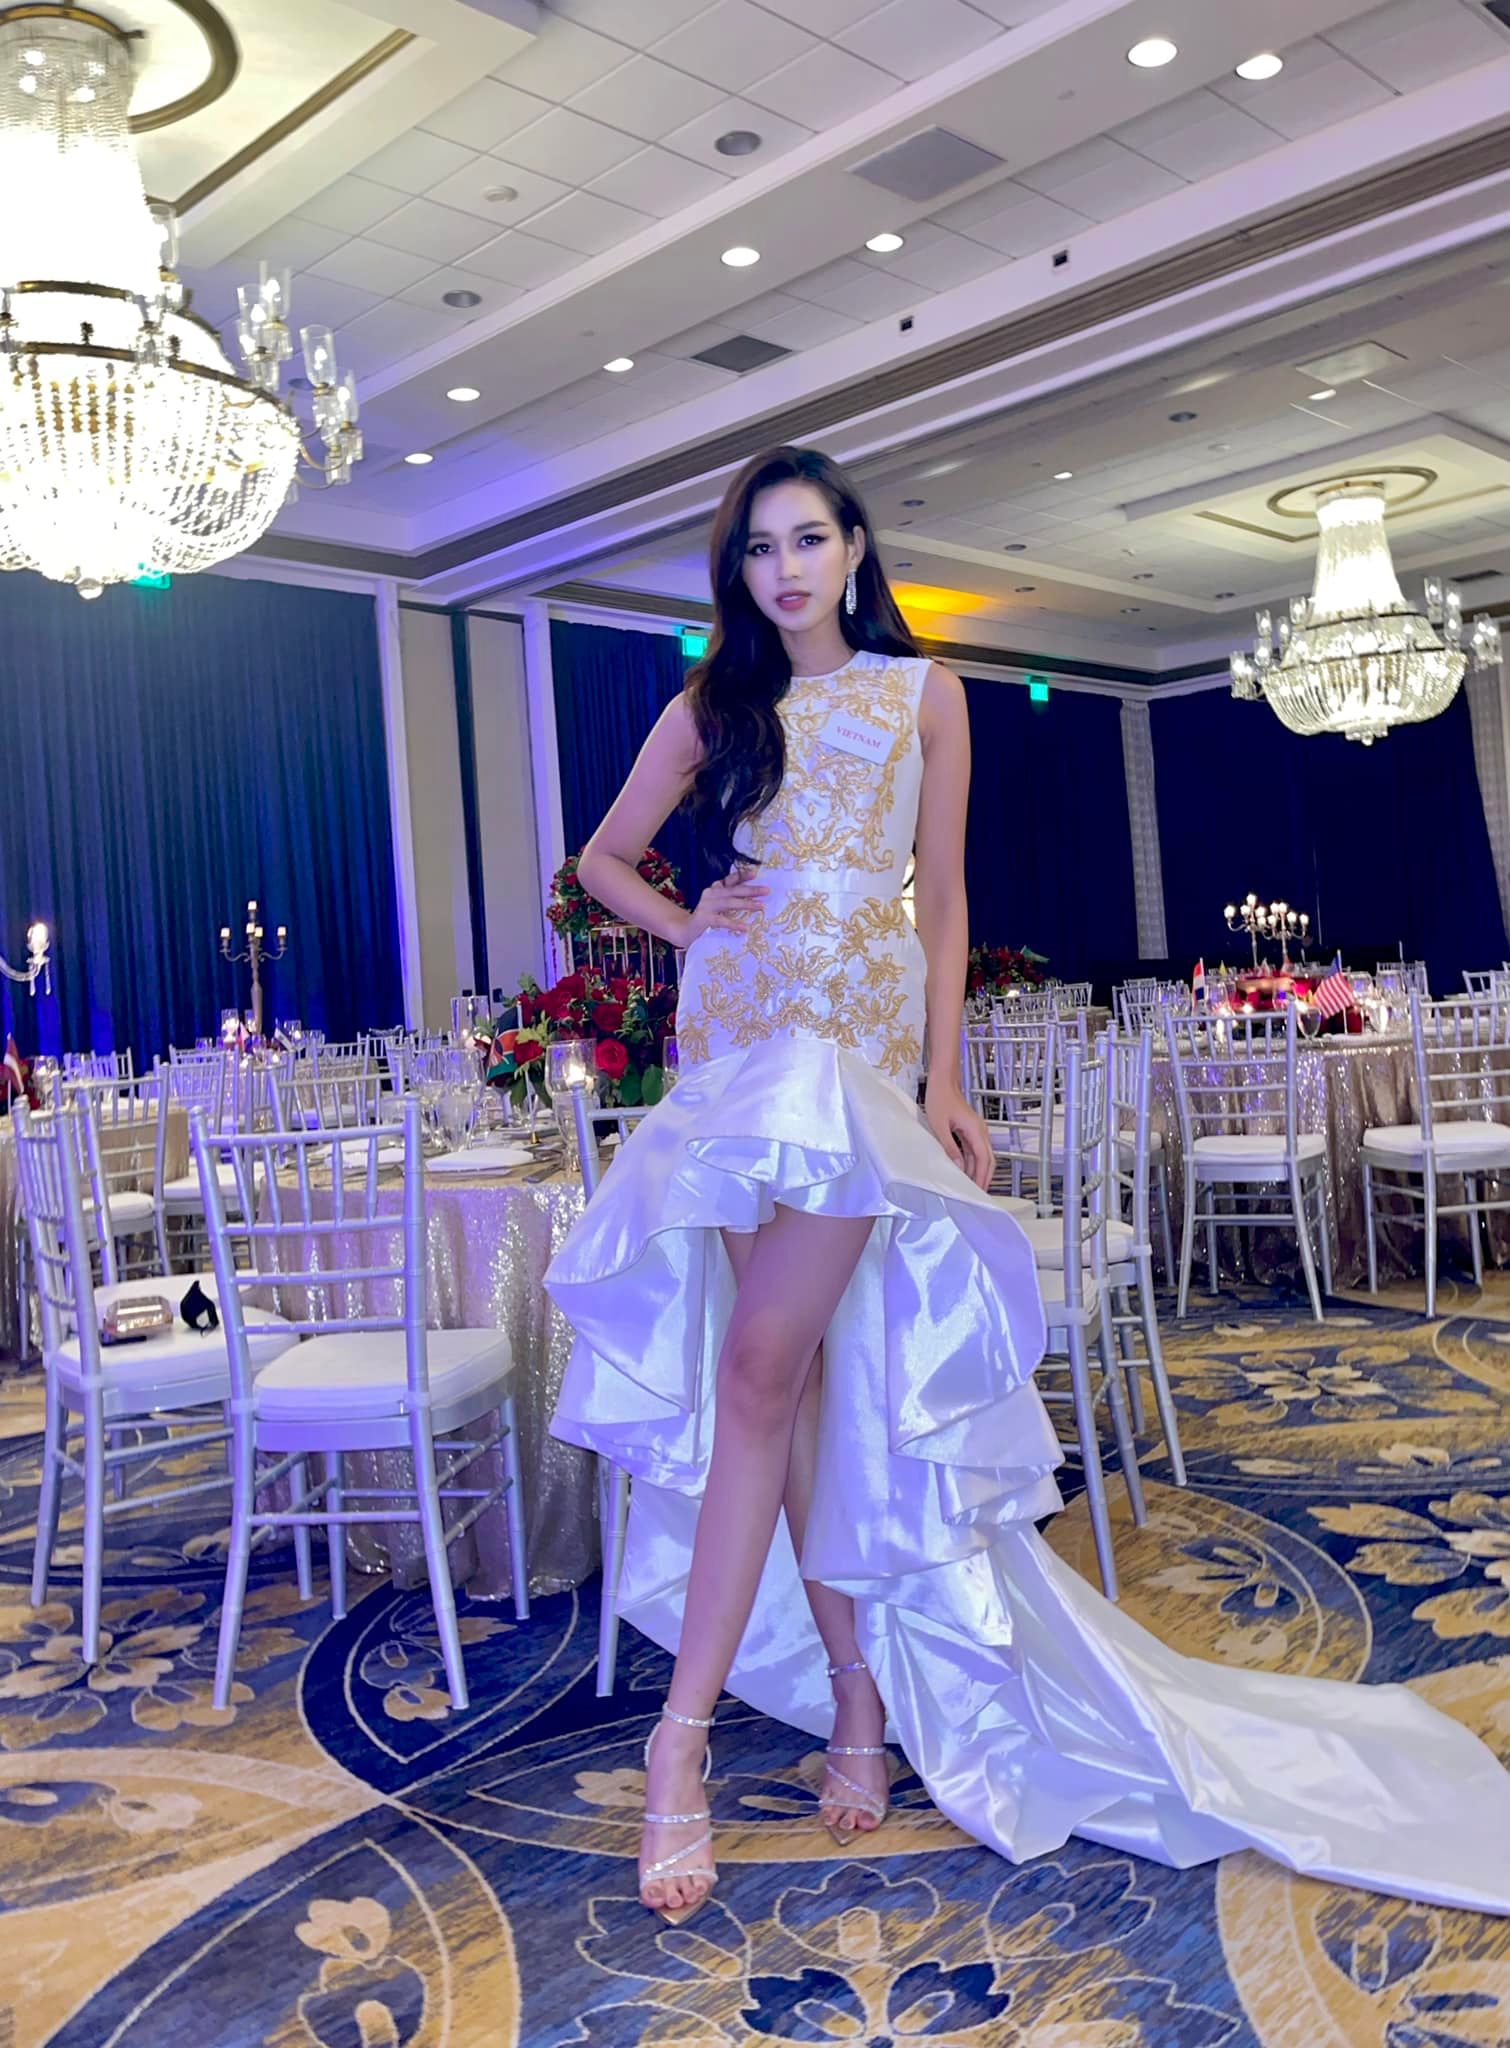 Đỗ Hà nổi bật với đôi chân dài 1m11 giữa dàn mỹ nhân Miss World, mang trang sức giá trị 103 triệu đấu giá từ thiện - Ảnh 2.